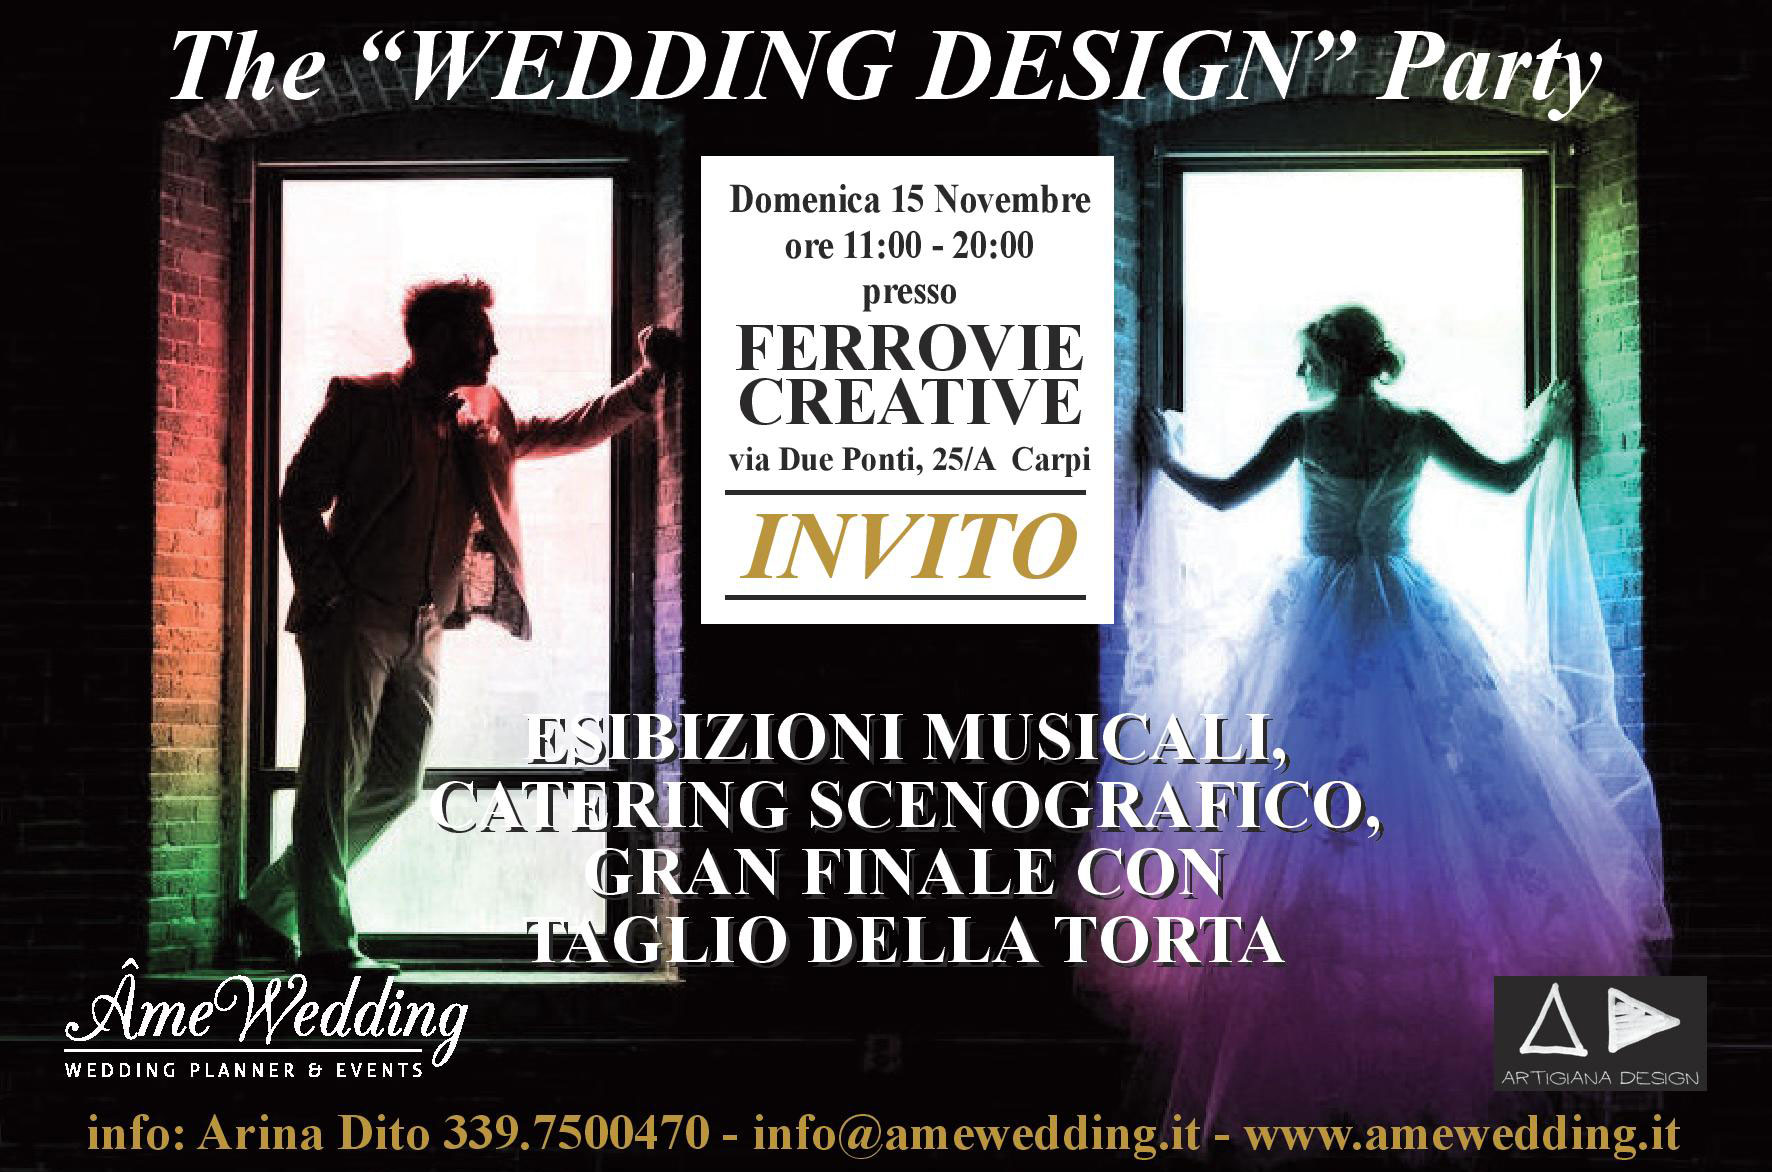 The Wedding Design Party - Invito